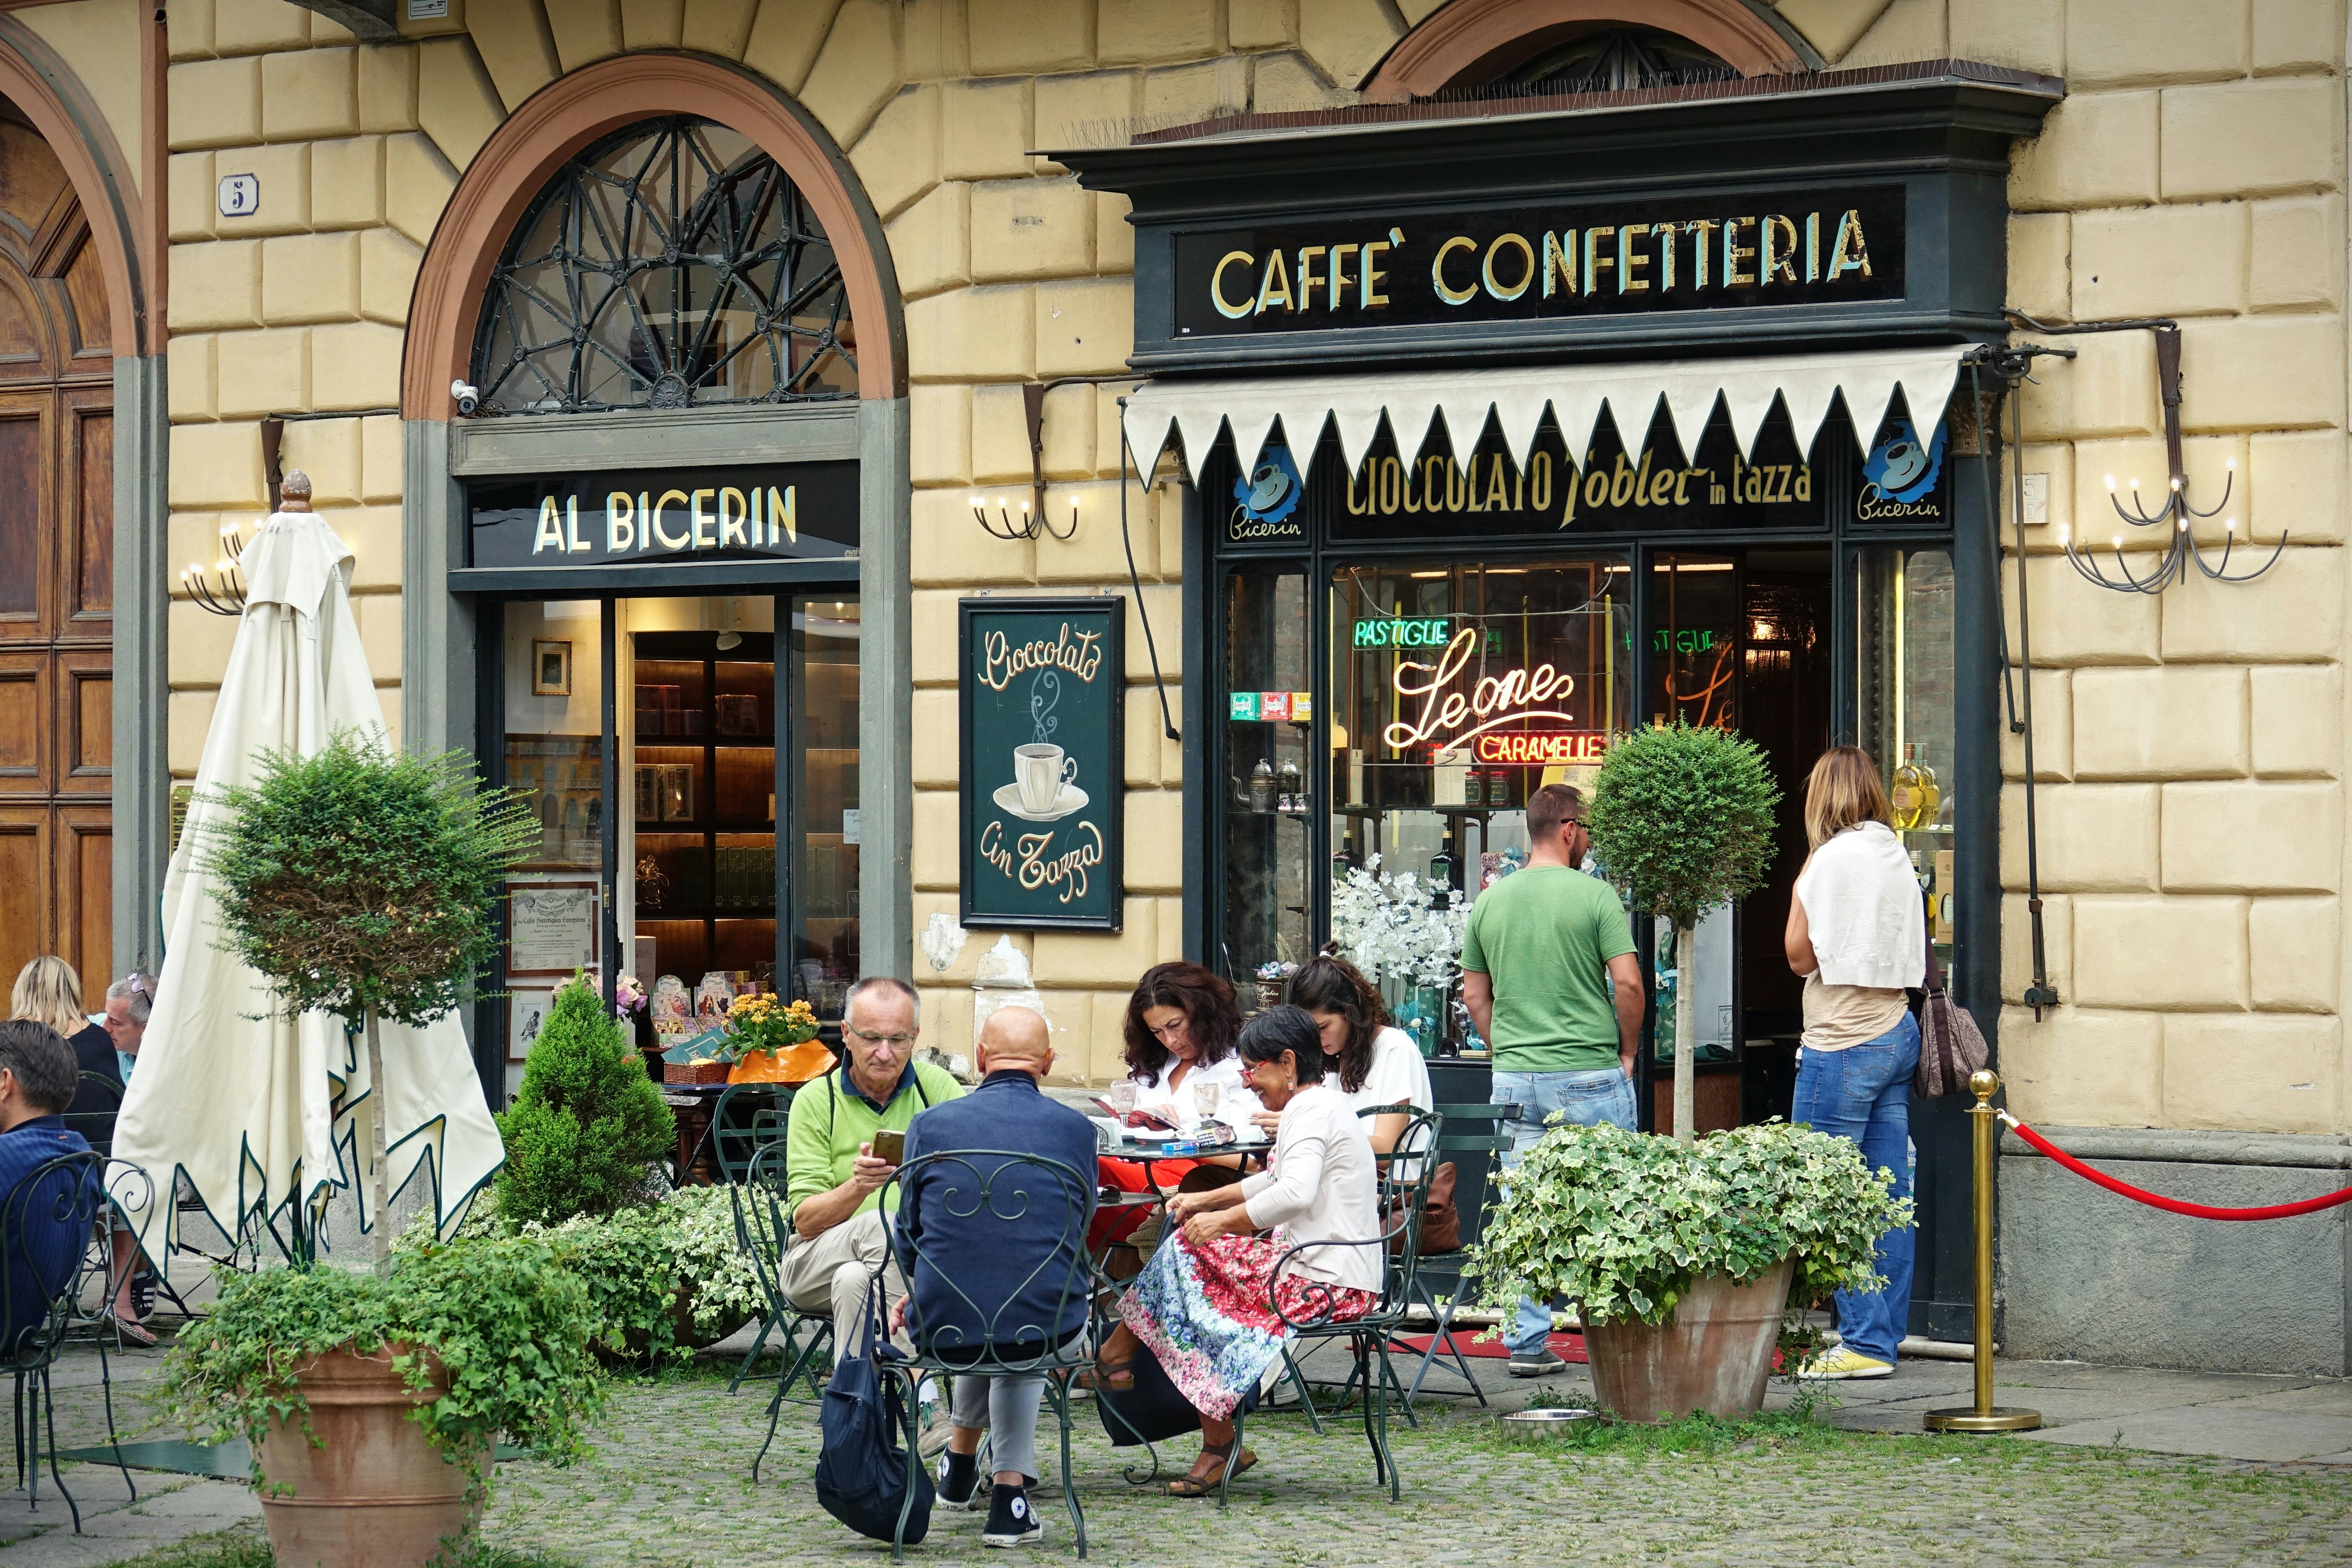 Historic Caffè Al Bicerin (1763), located in Piazza della Consolata, Turin